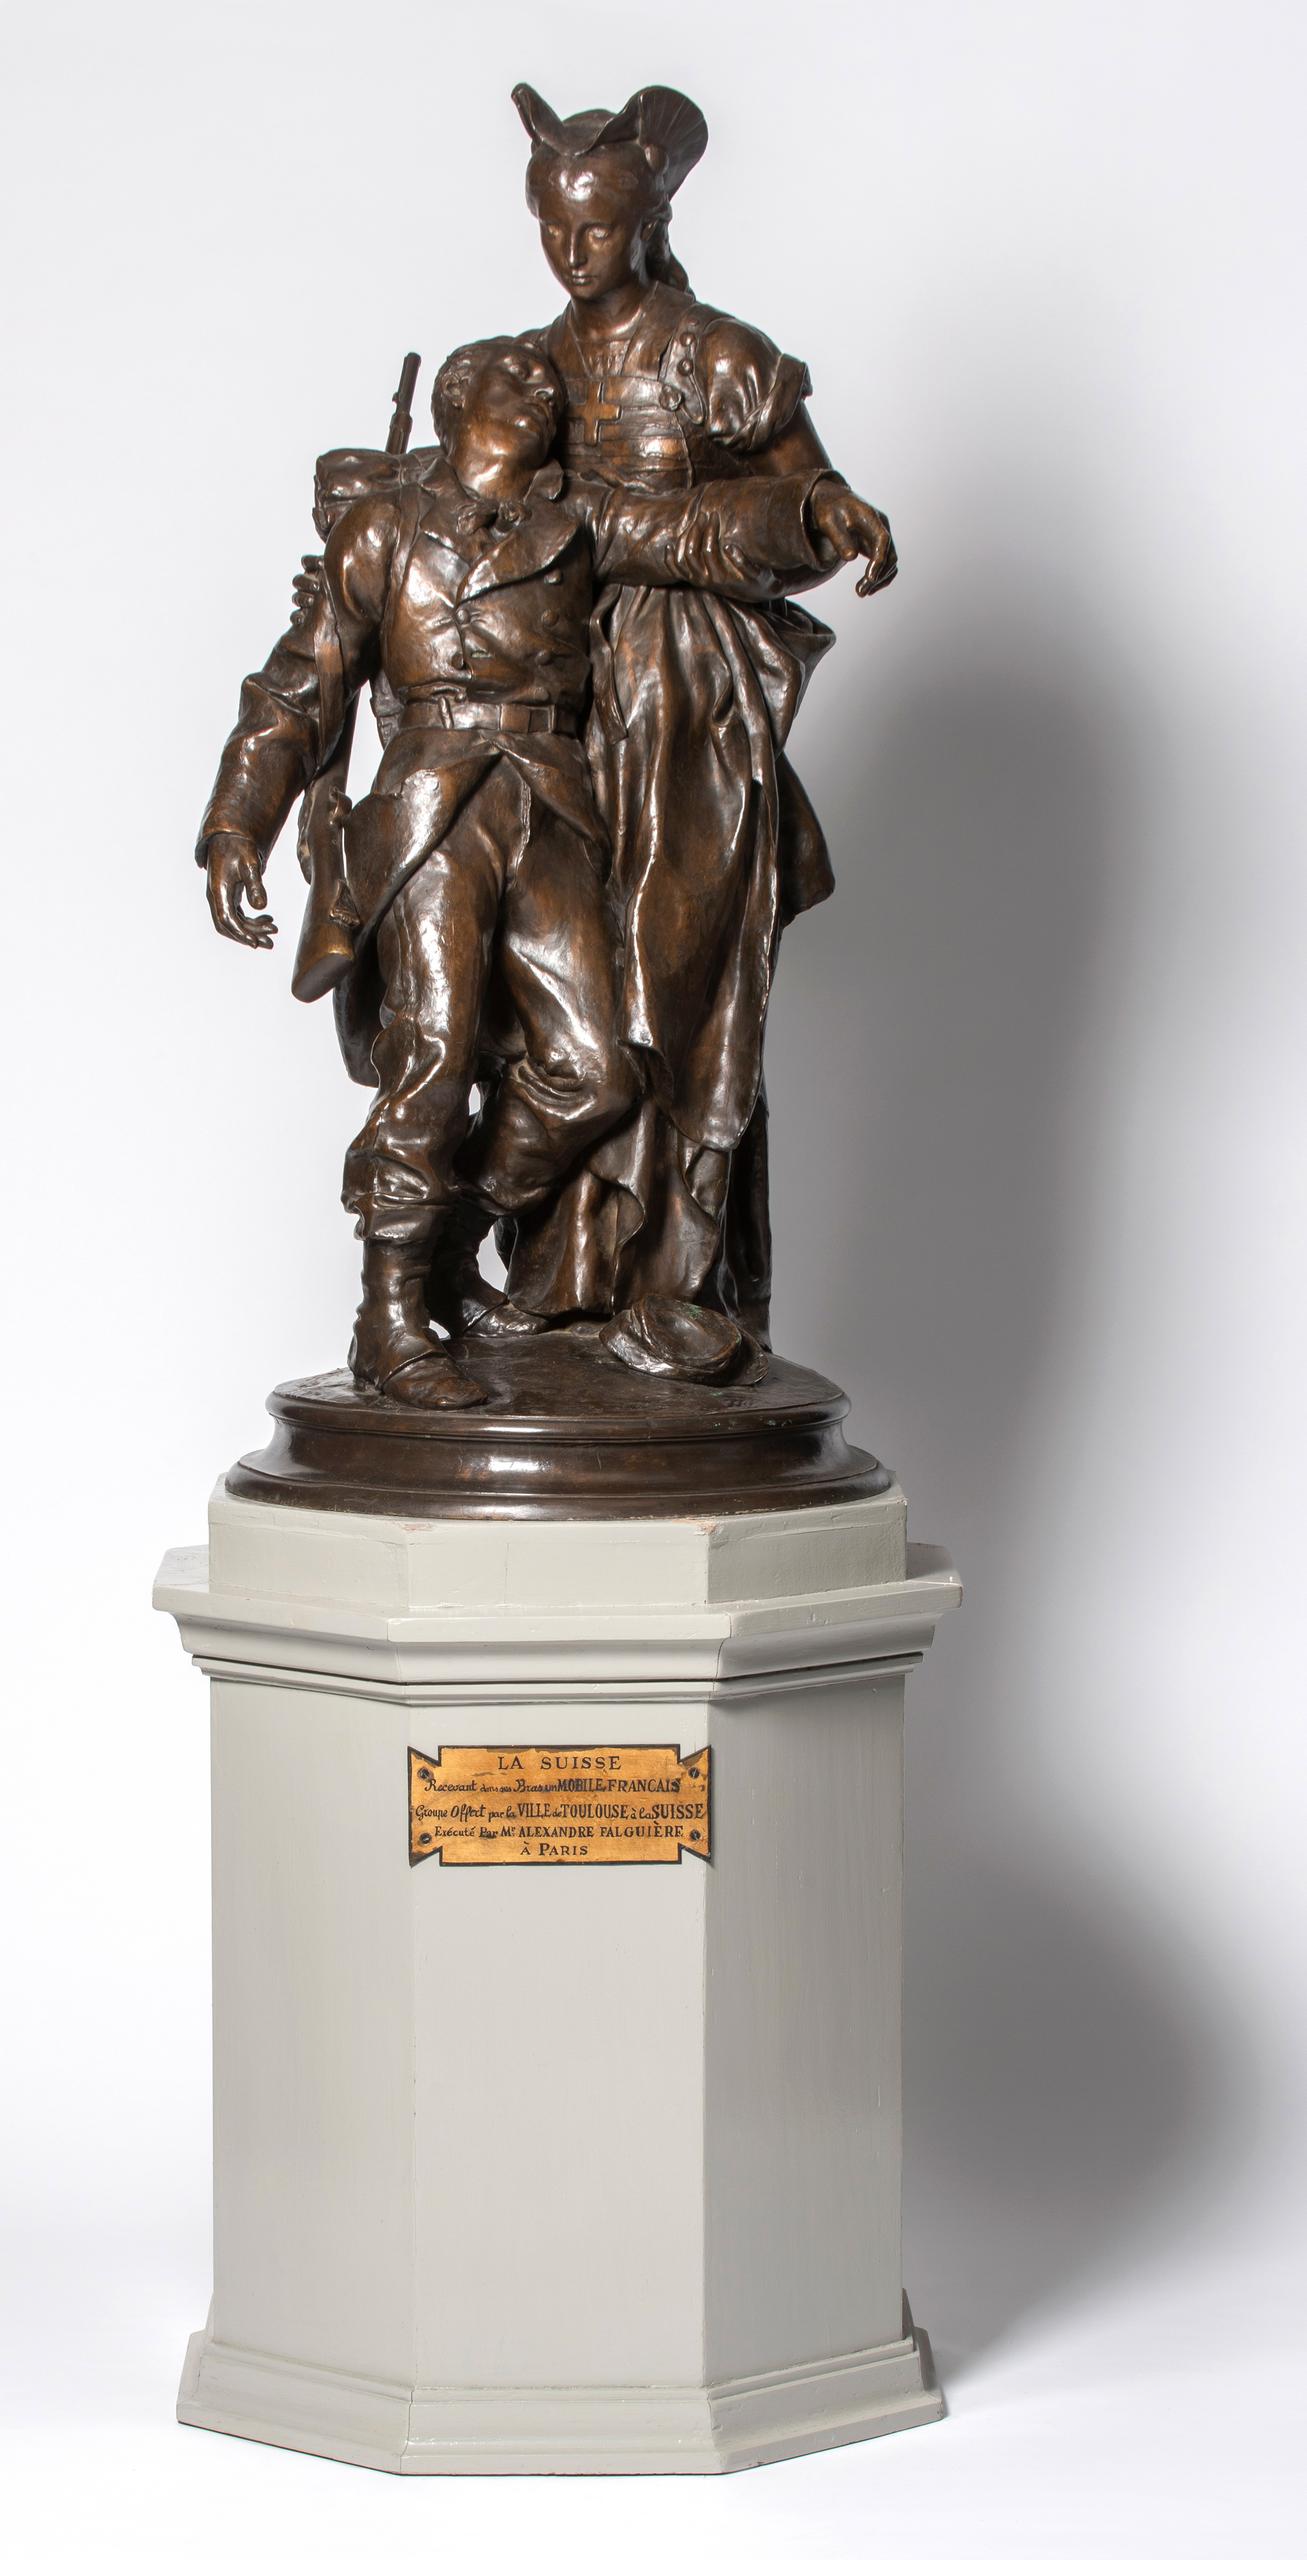 bronze sculpture by the French artist Alexandre Falguière, 1874